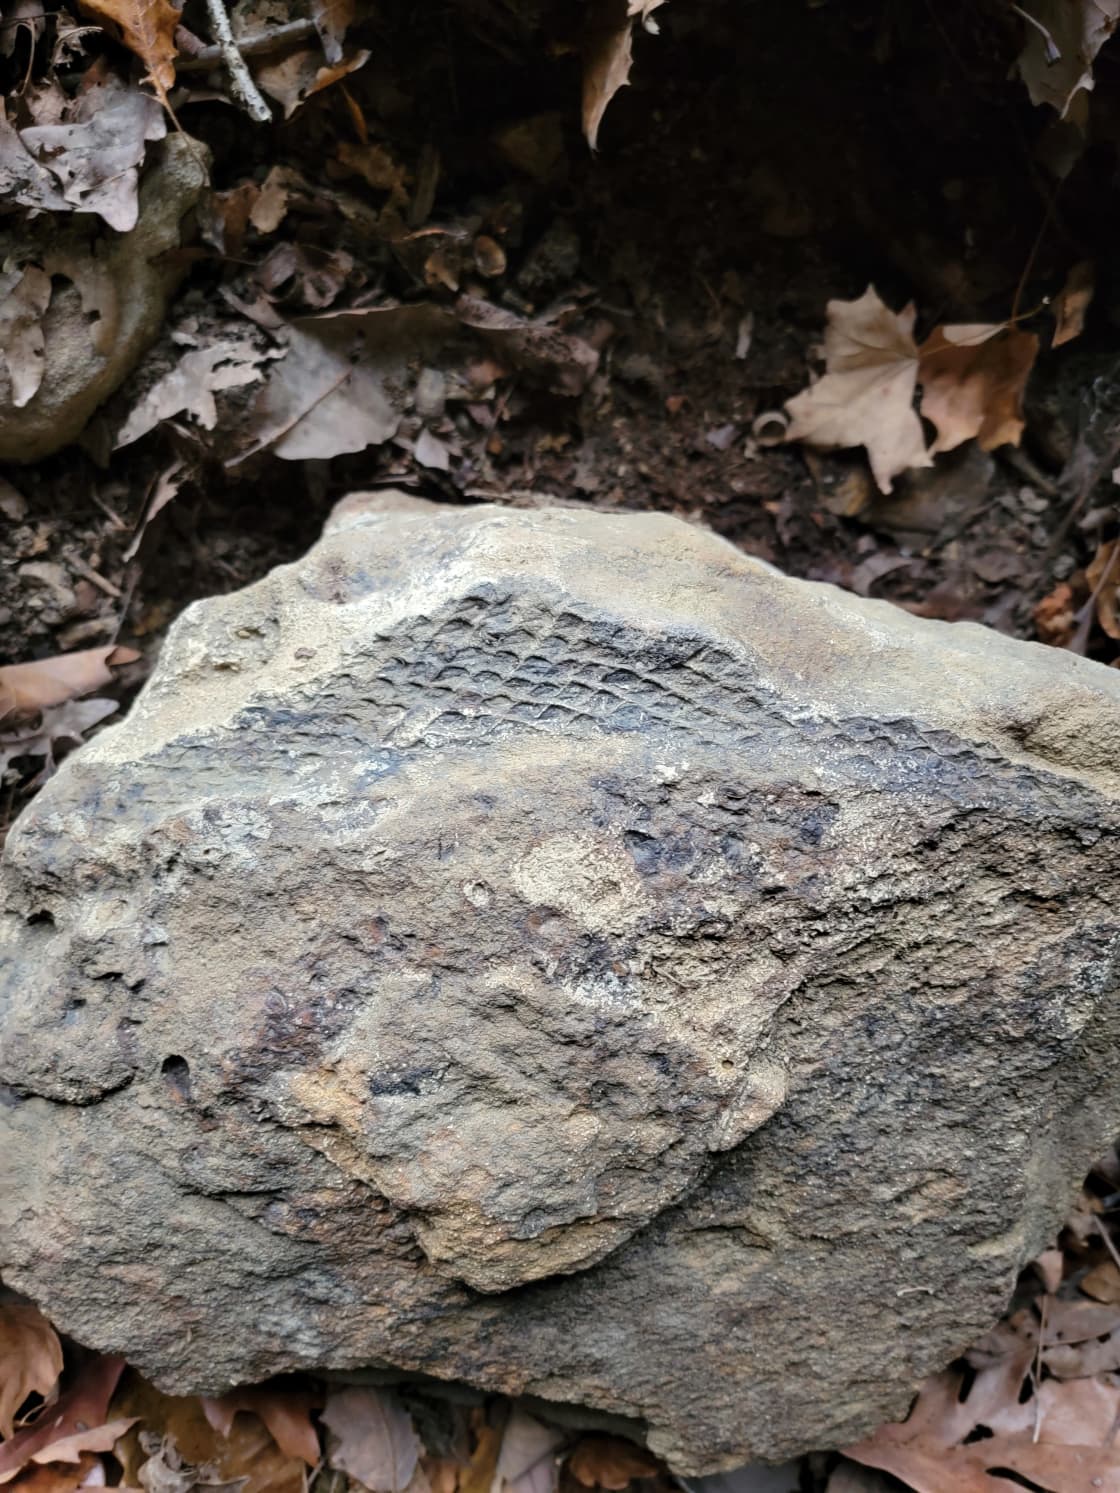 Prehistoric tree bark found in roadside cave.